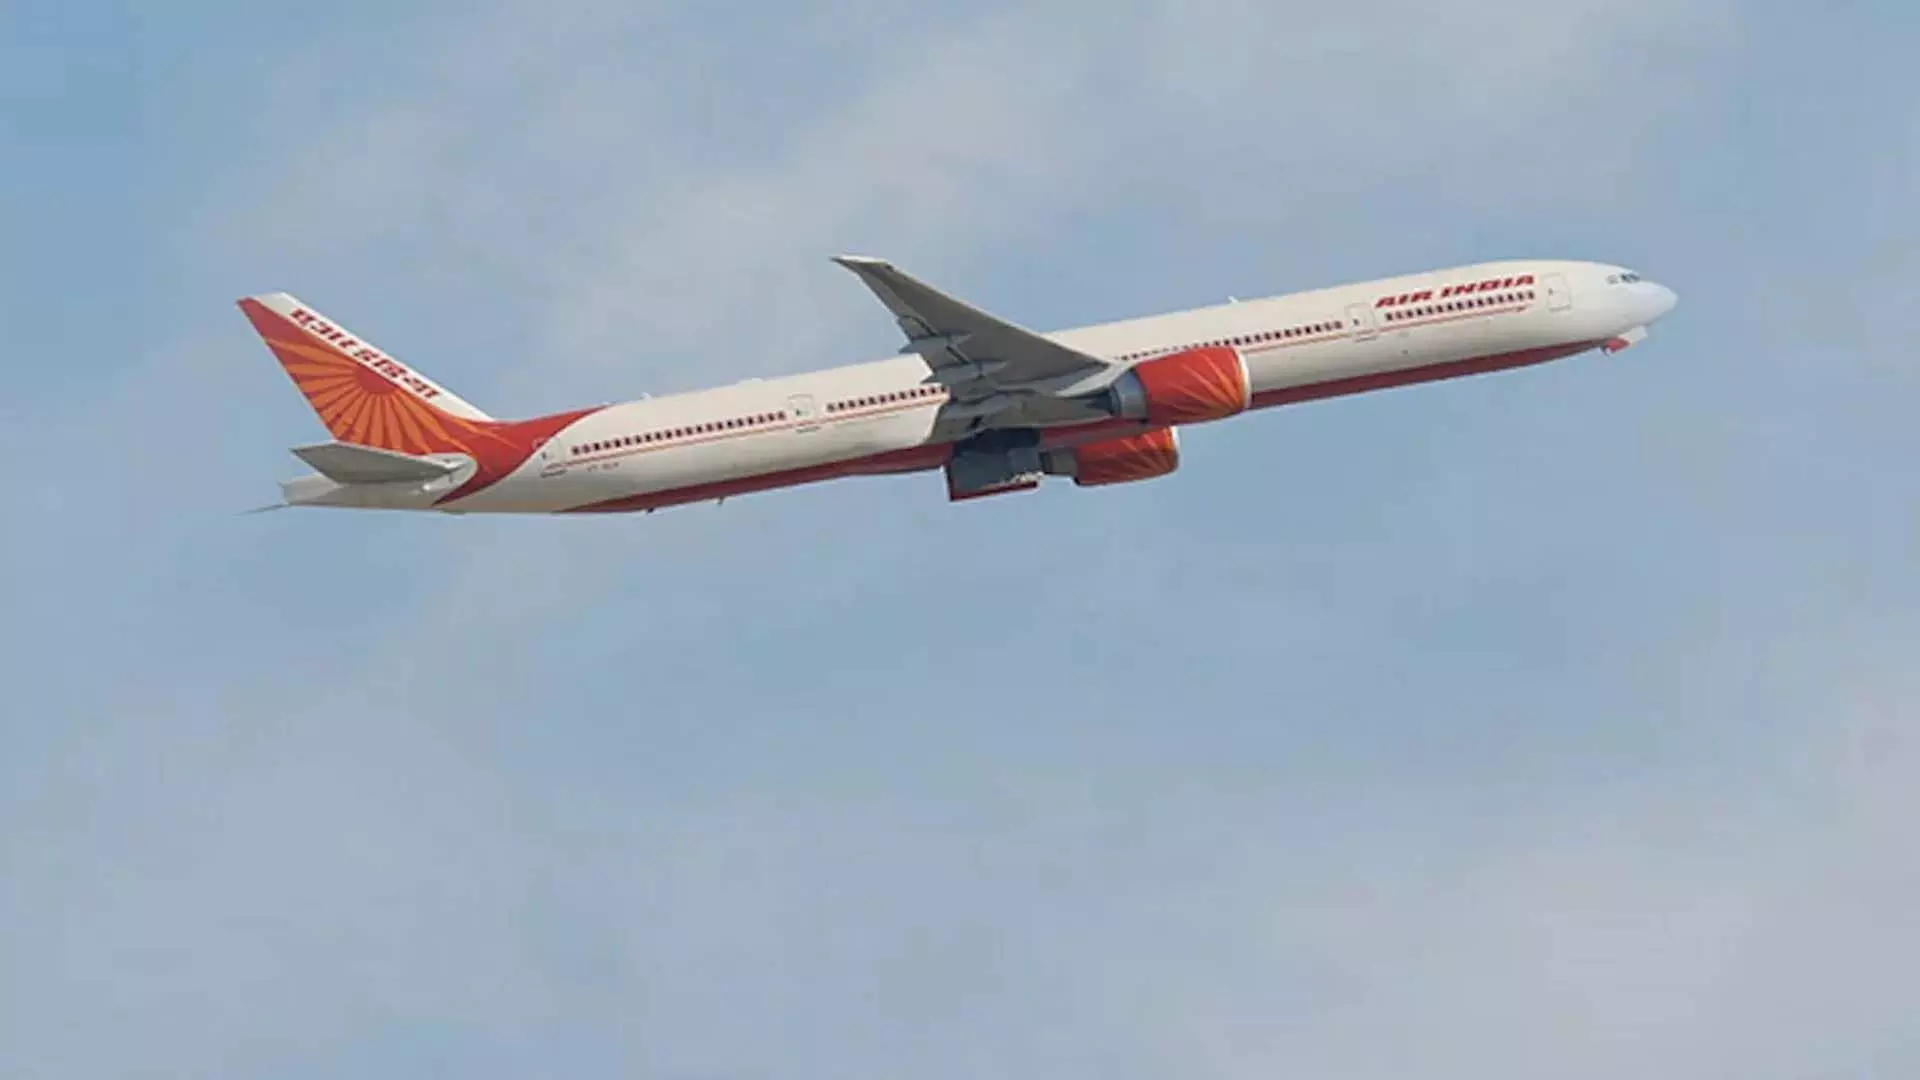 व्हीलचेयर नहीं मिलने पर यात्री की मौत के बाद एयर इंडिया पर ₹30 लाख का जुर्माना